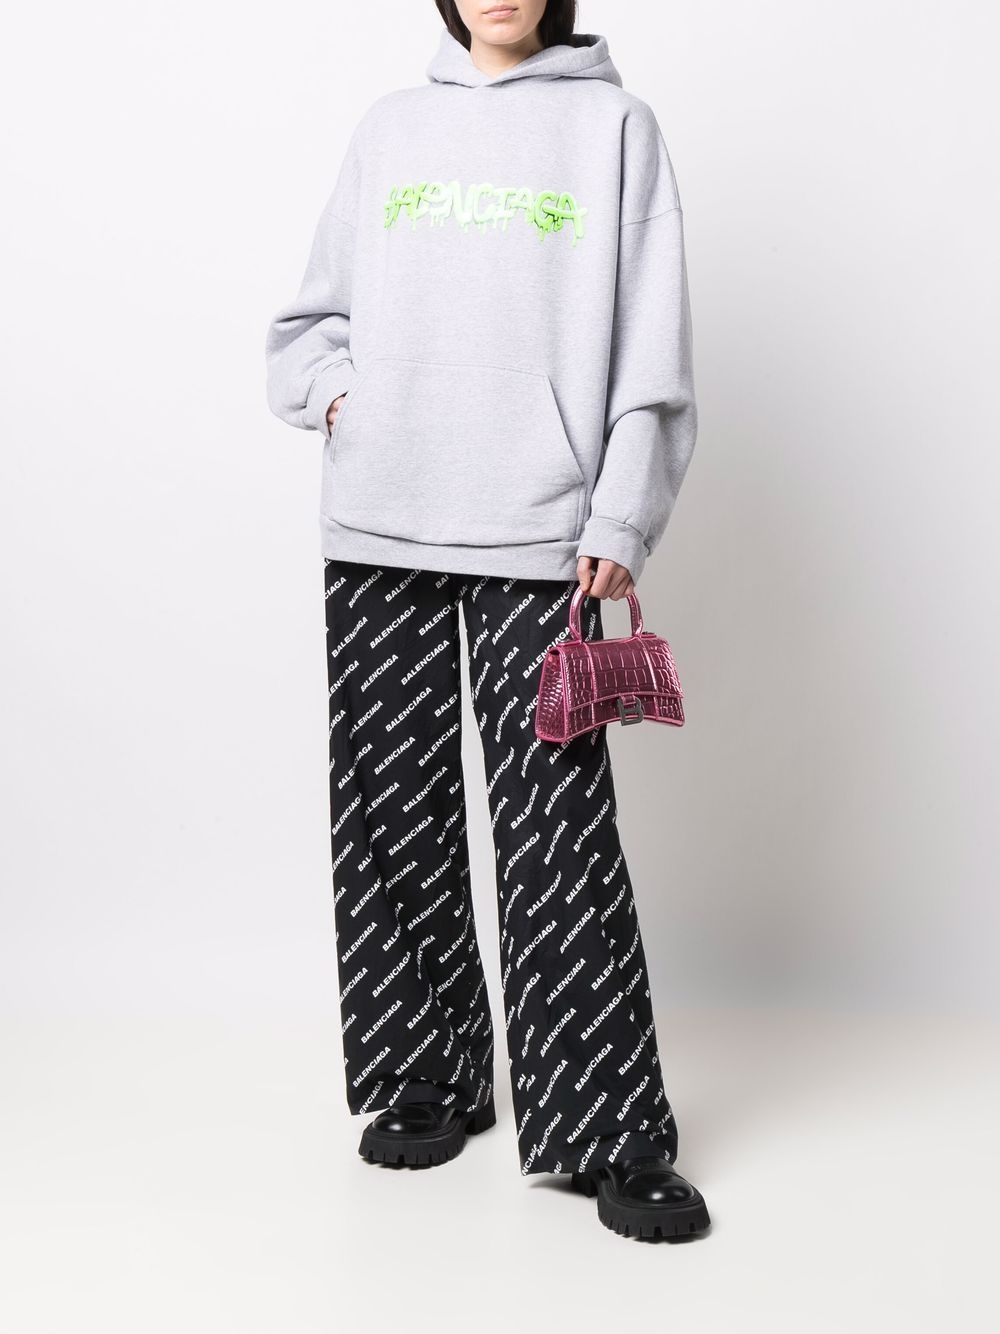 фото Balenciaga пижамные брюки с логотипом